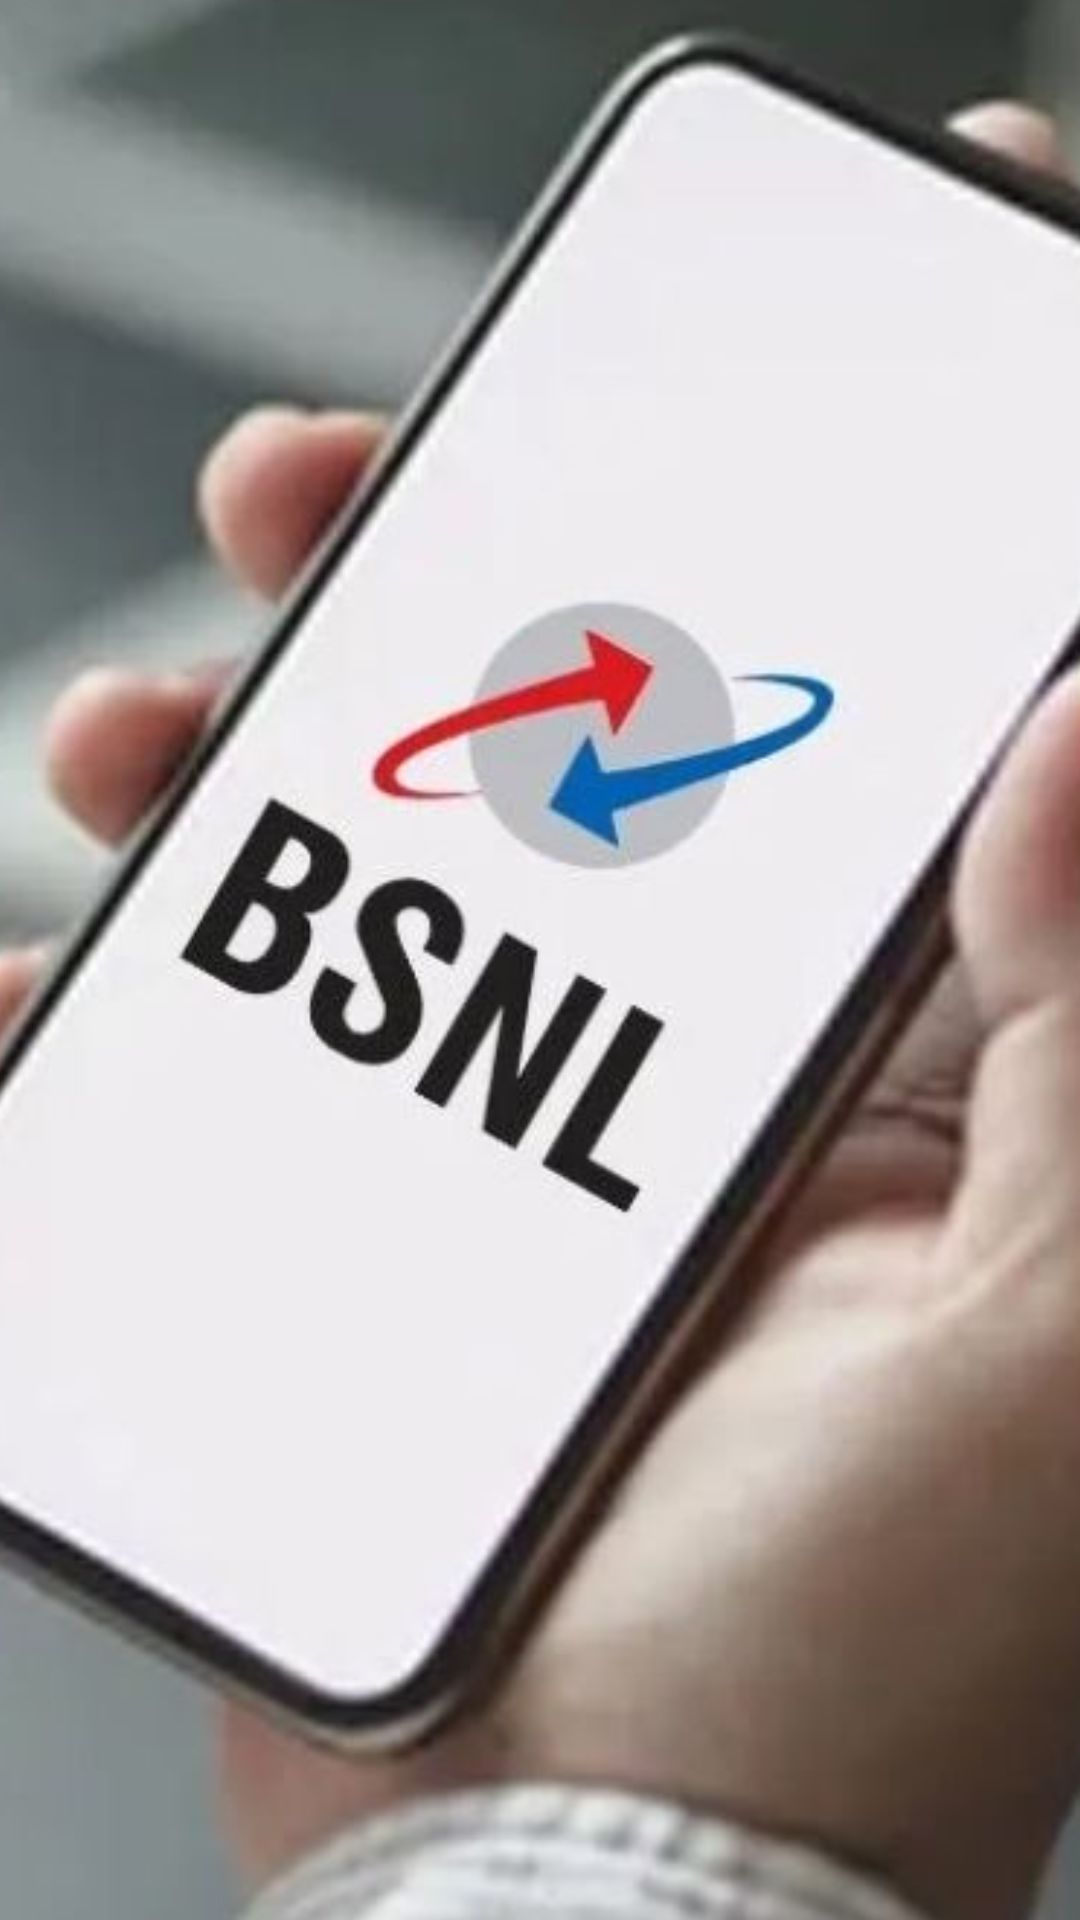 BSNL का तूफानी रिचार्ज प्लान, 30 दिनों तक चलाएं इंटरनेट और करें जी भर के बातें